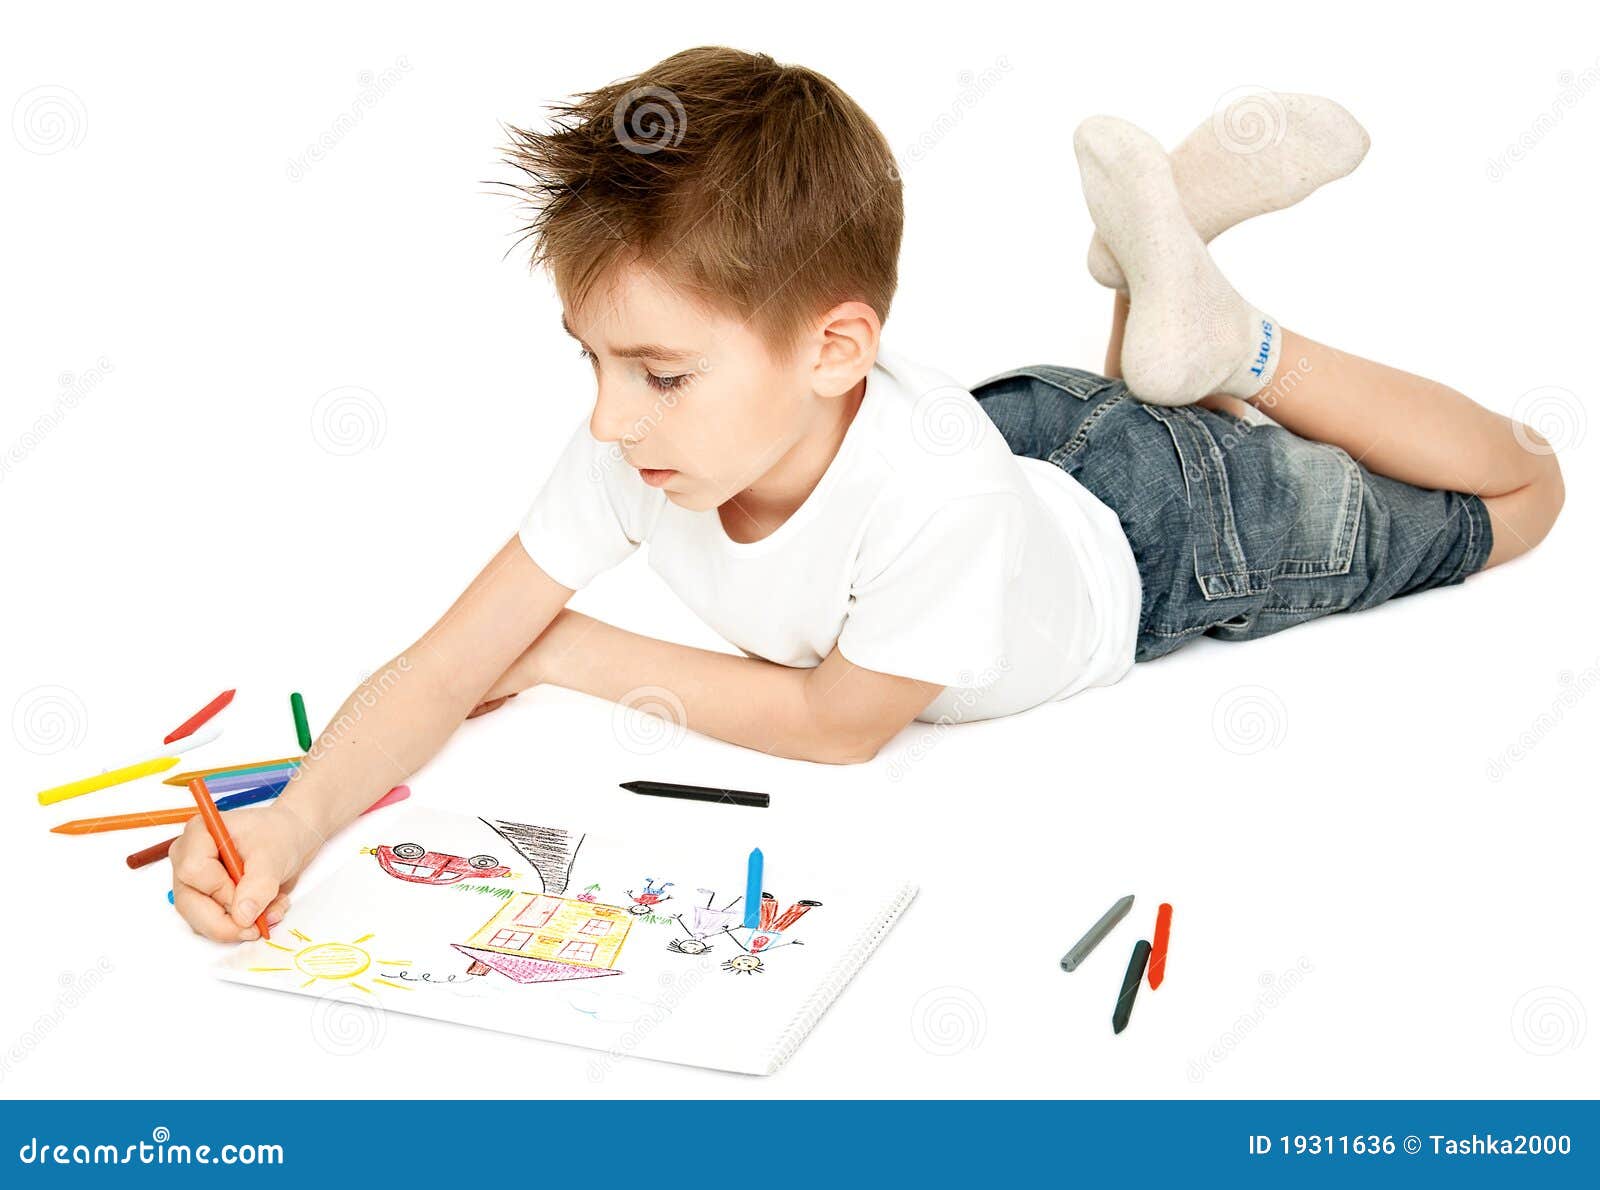 σχέδιο αγοριών. το αγόρι σύρει το αγαπημένο πάτωμα η εικόνα χρωμάτων του